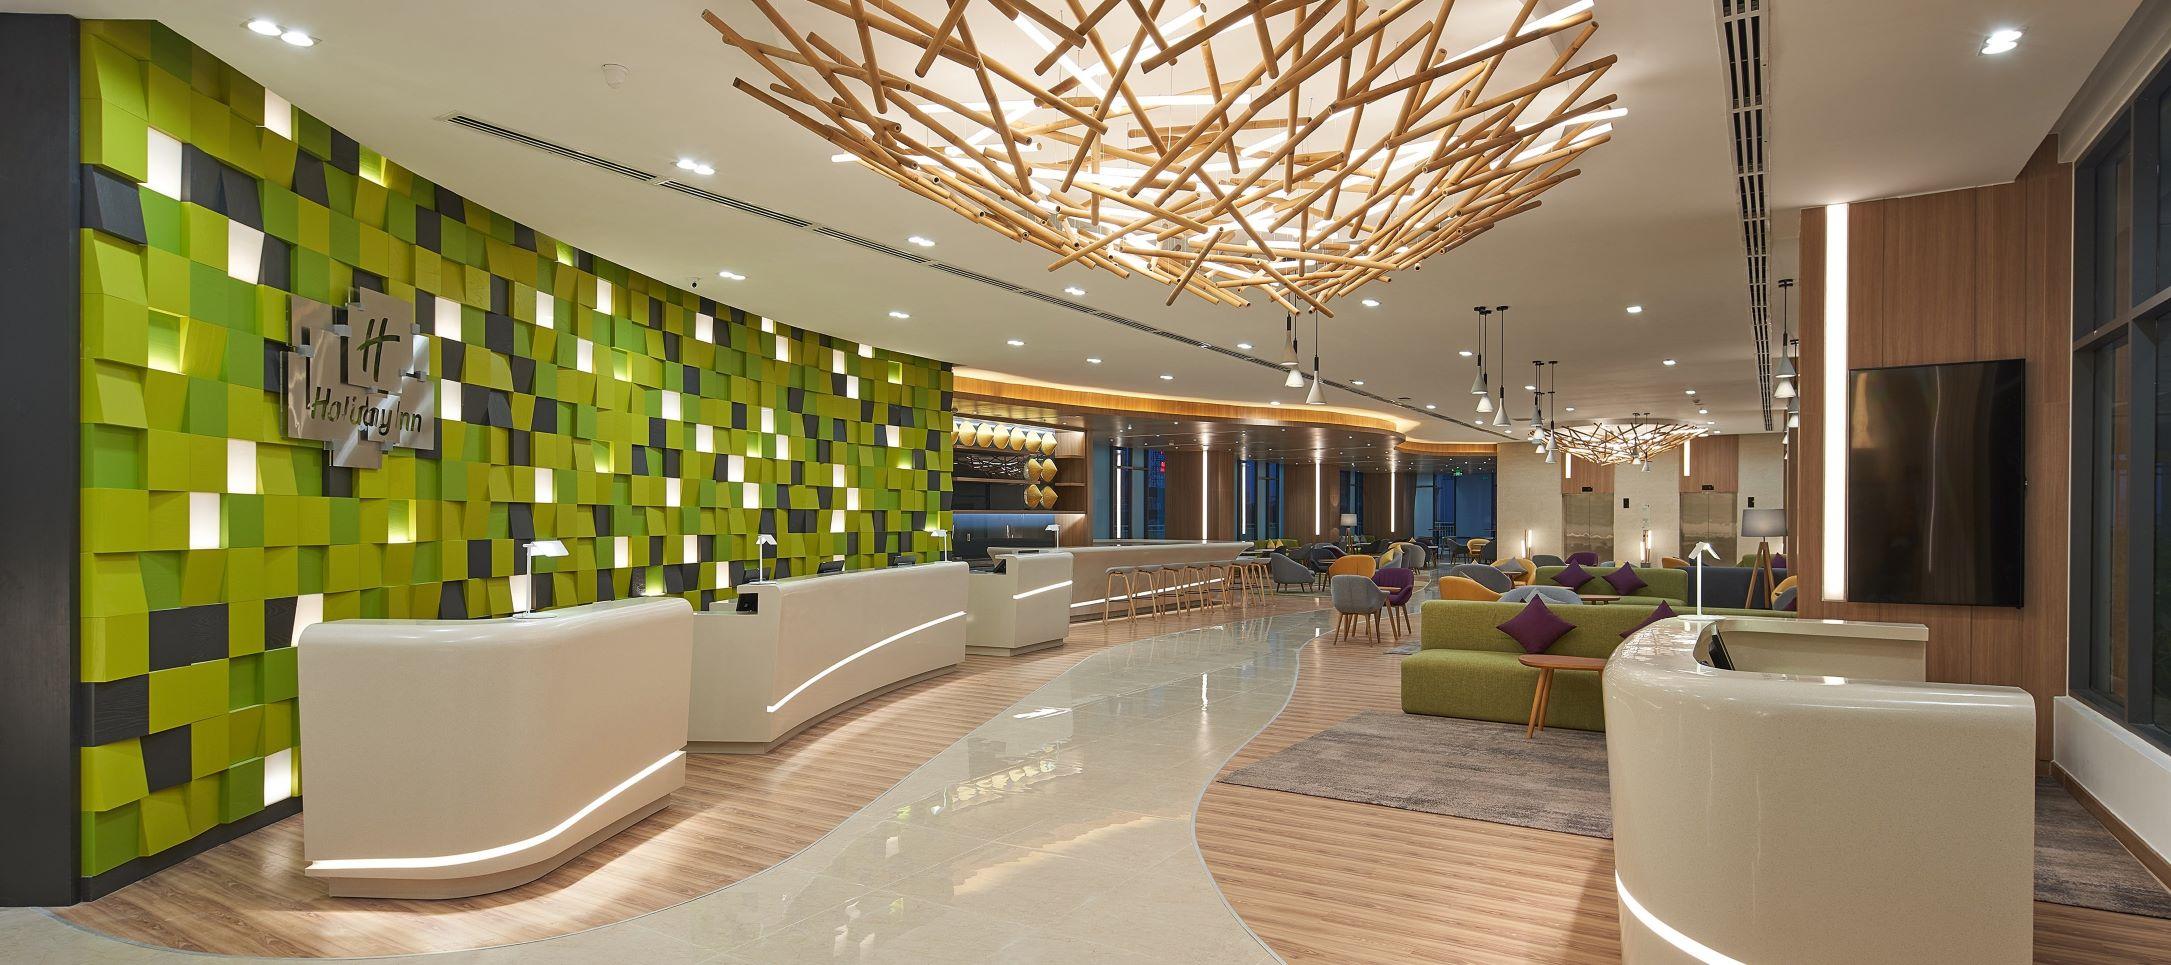 Holiday Inn & Suites Saigon Airport tuyển dụng - Tìm việc mới nhất, lương thưởng hấp dẫn.